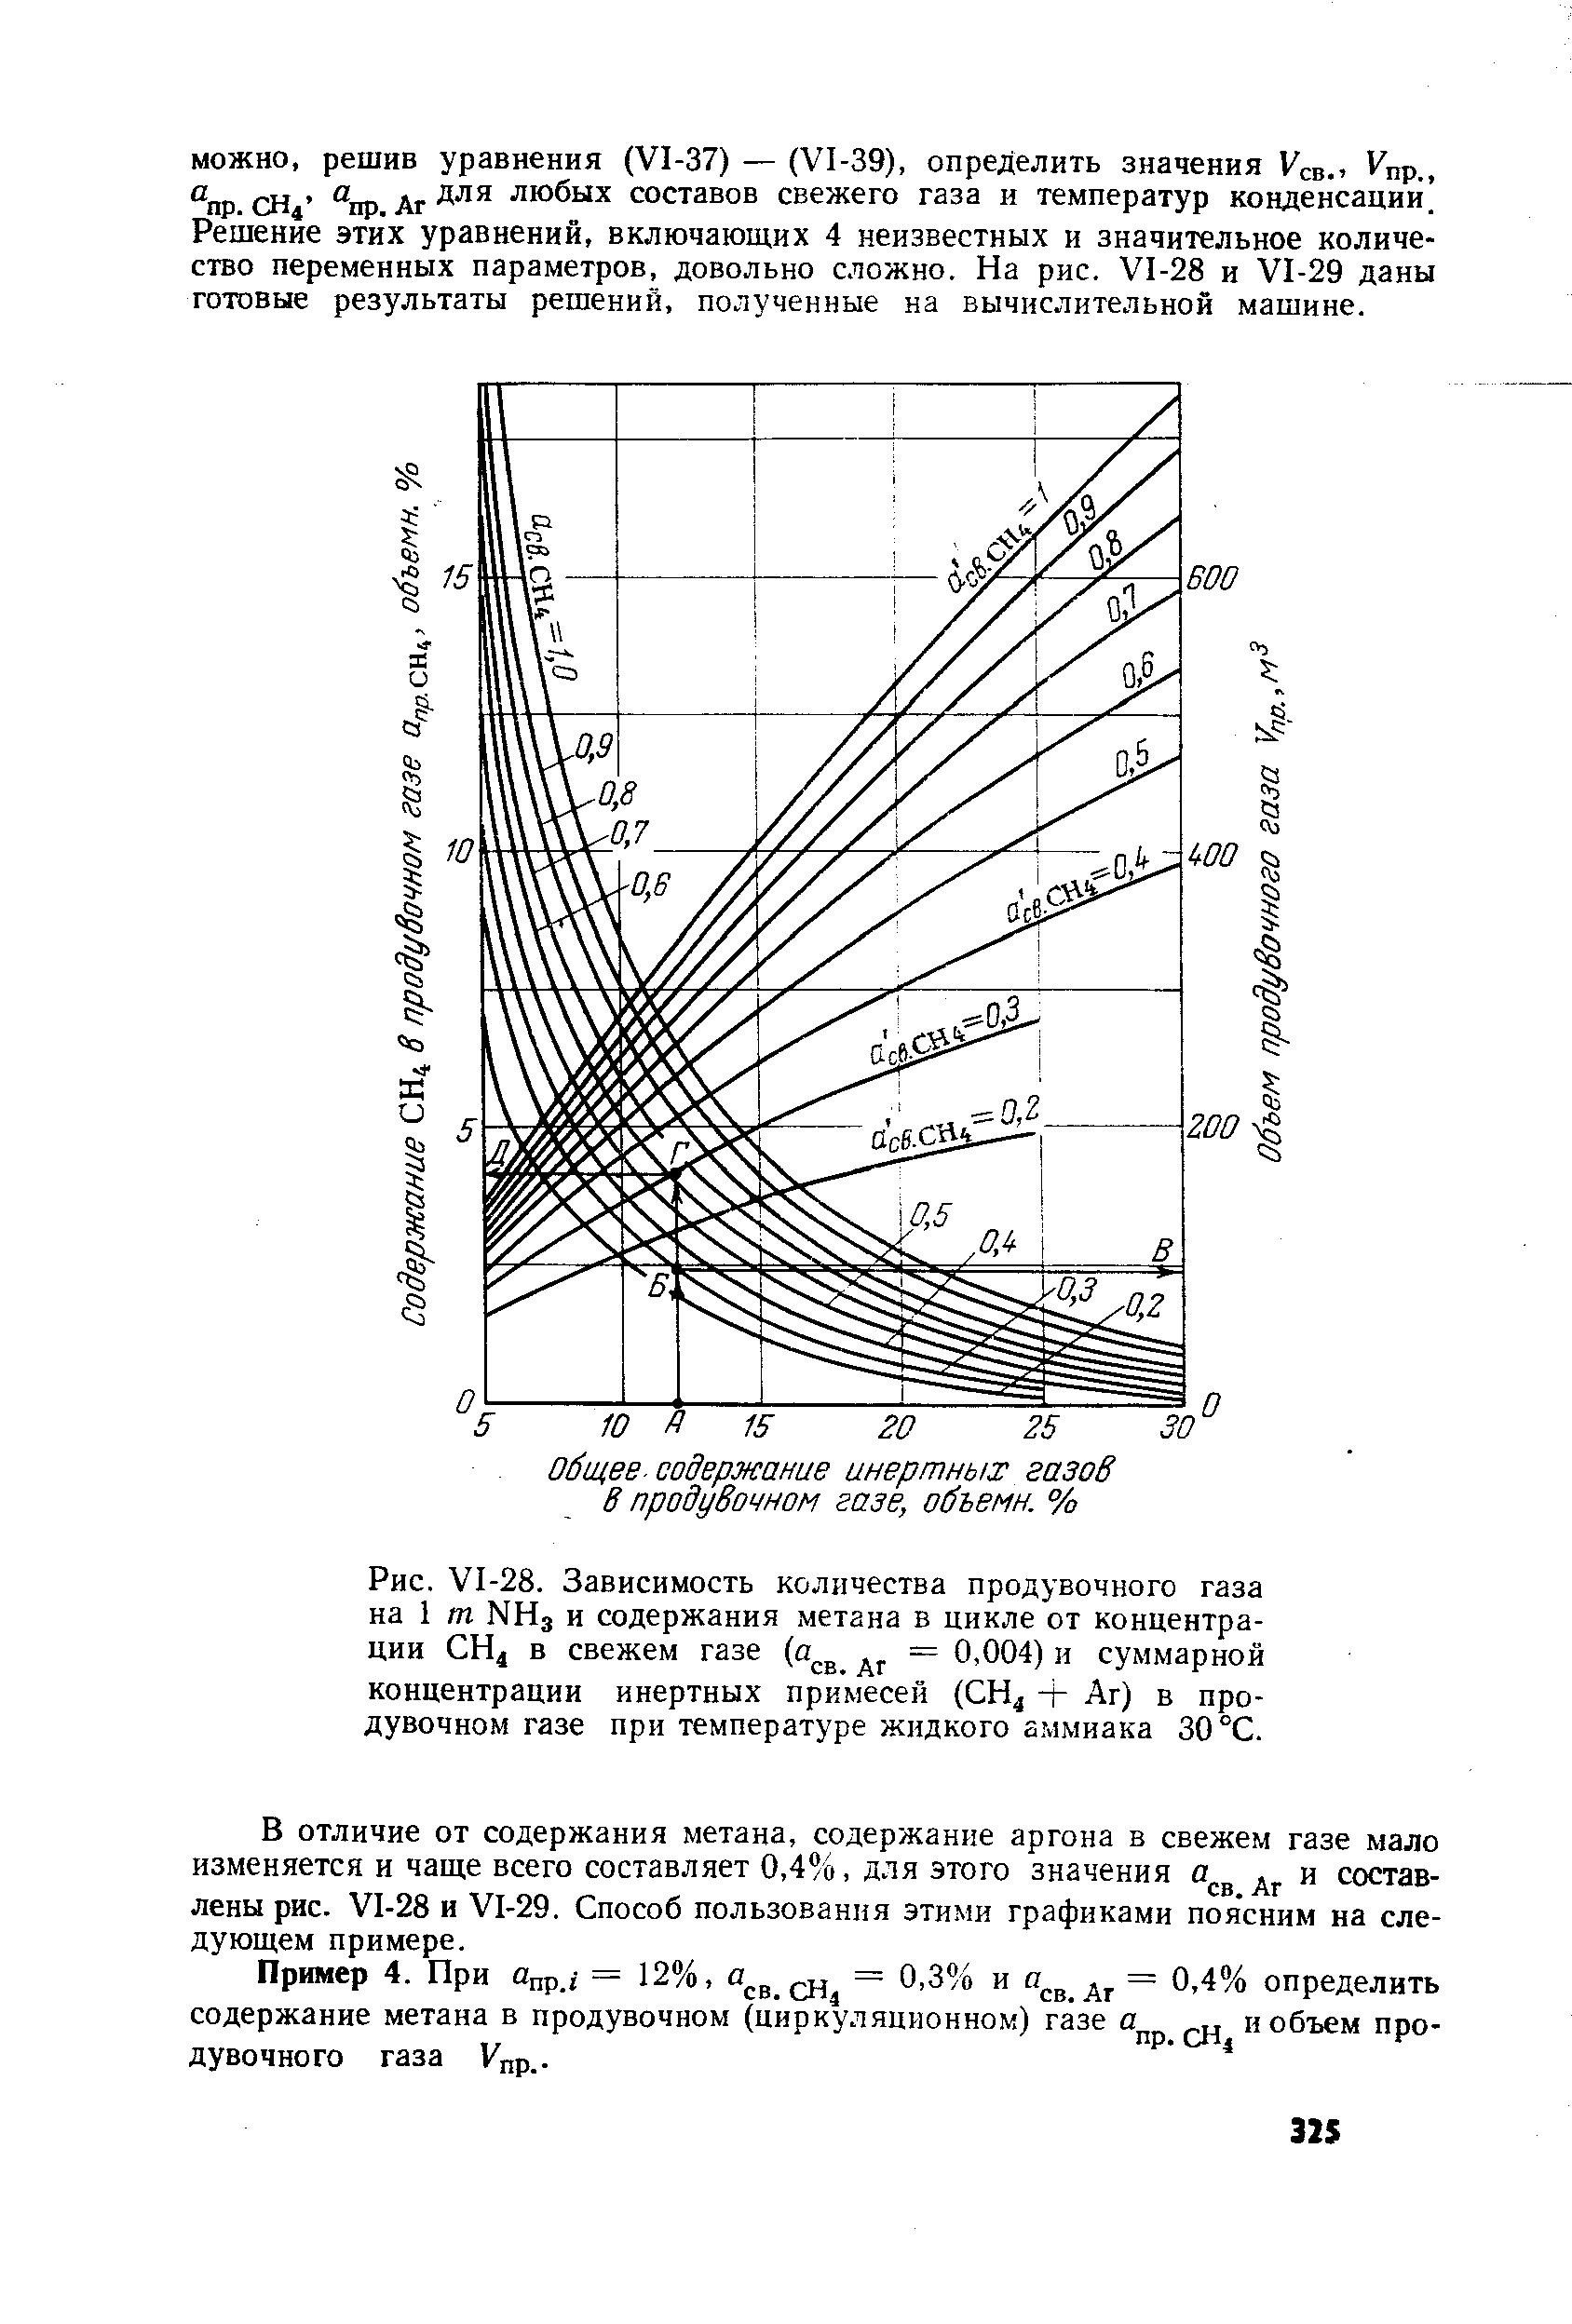 В отличие от содержания метана, содержание аргона в свежем газе мало изменяется и чаще всего составляет 0,4%, для этого значения д . и составлены рис. У1-28 и У1-29. Способ пользования этими графиками поясним на следующем примере.